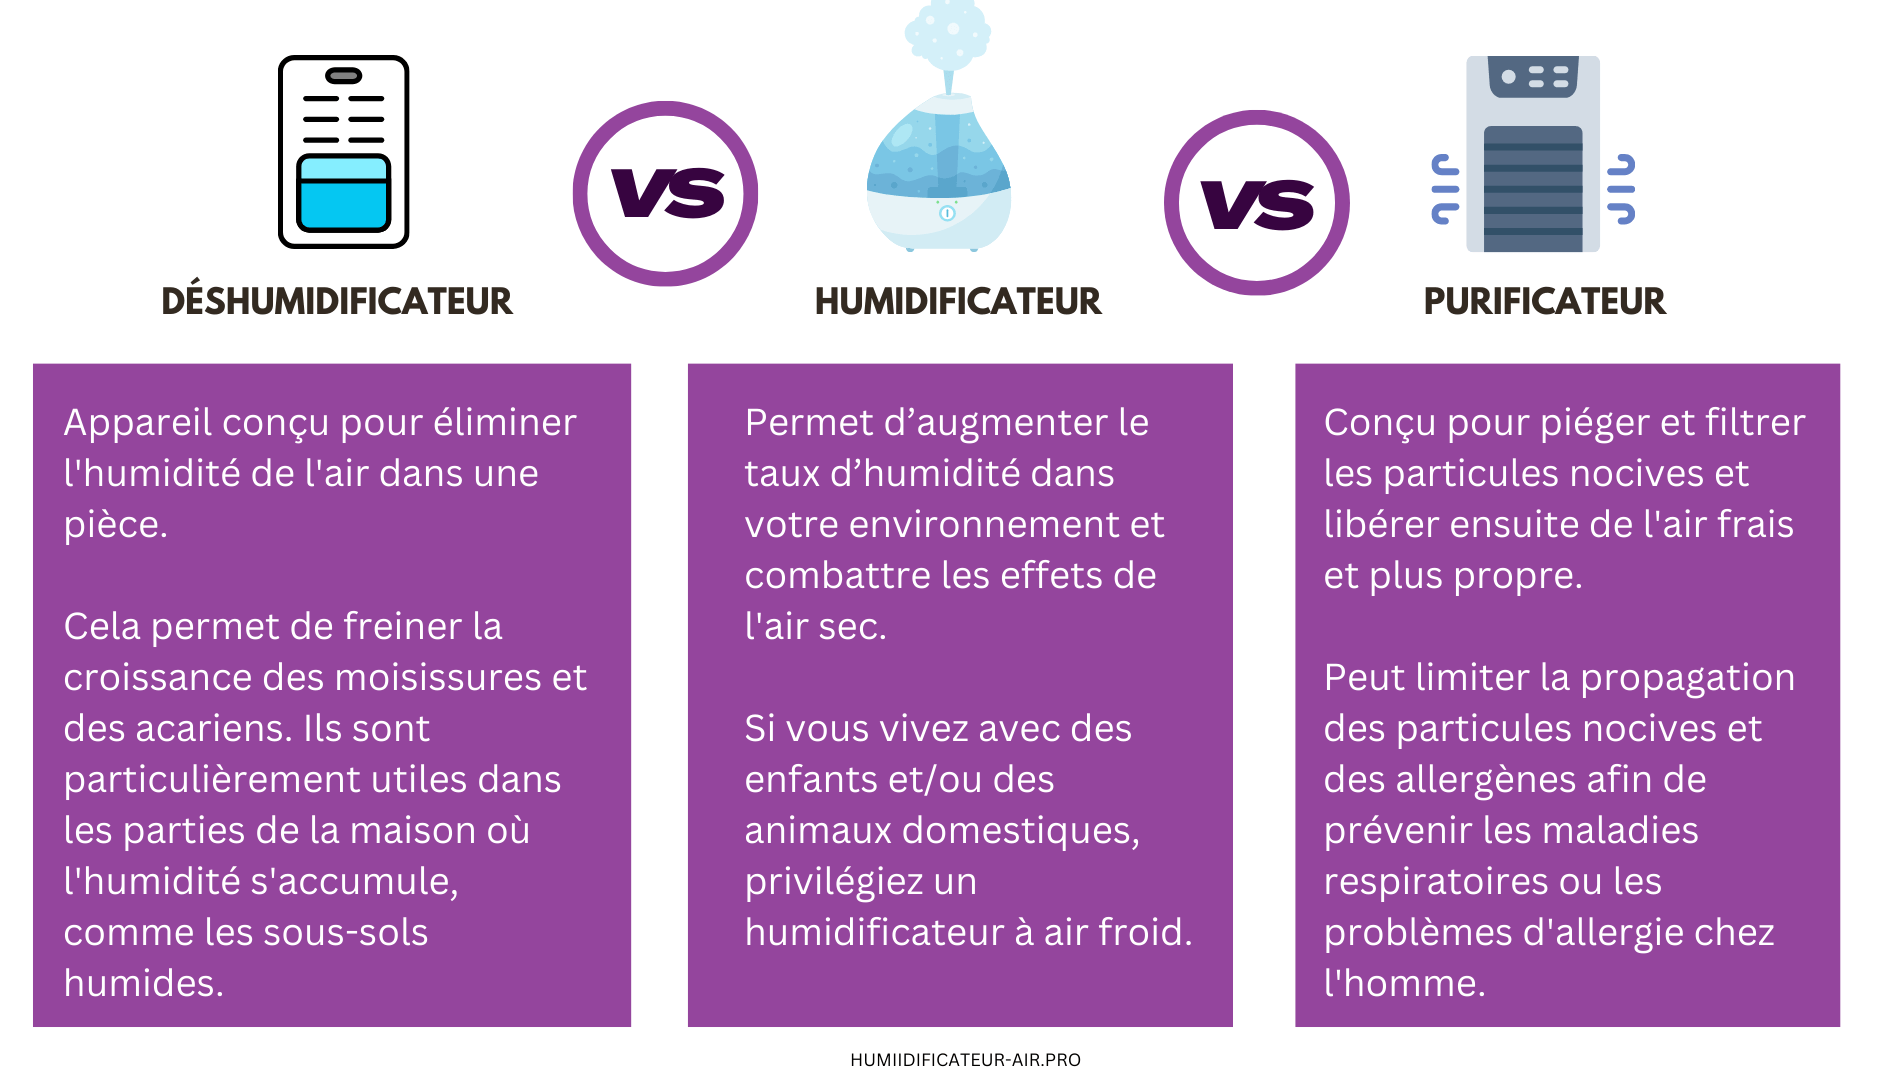 Comparatif Humidificateur vs Purificateur vs Deshumidificateur